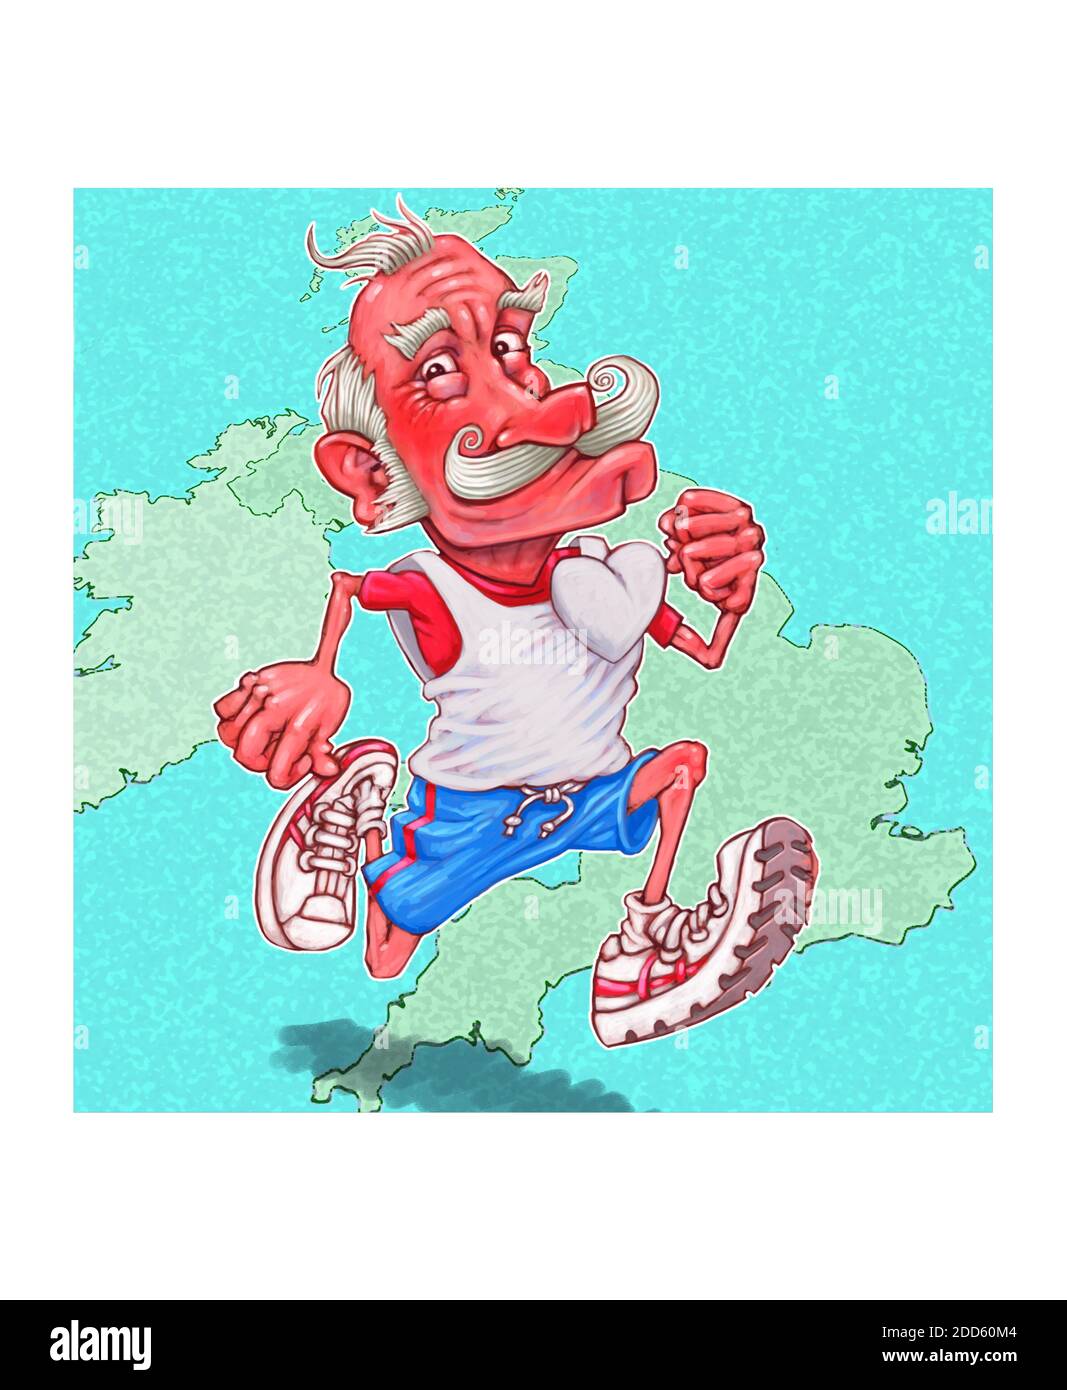 Illustration artistique d'un jogging élégant et mature qui s'exécute sur un La carte stylisée représentant la Grande-Bretagne s'adapte à la santé du cœur Verrouillage Covid-19 Banque D'Images